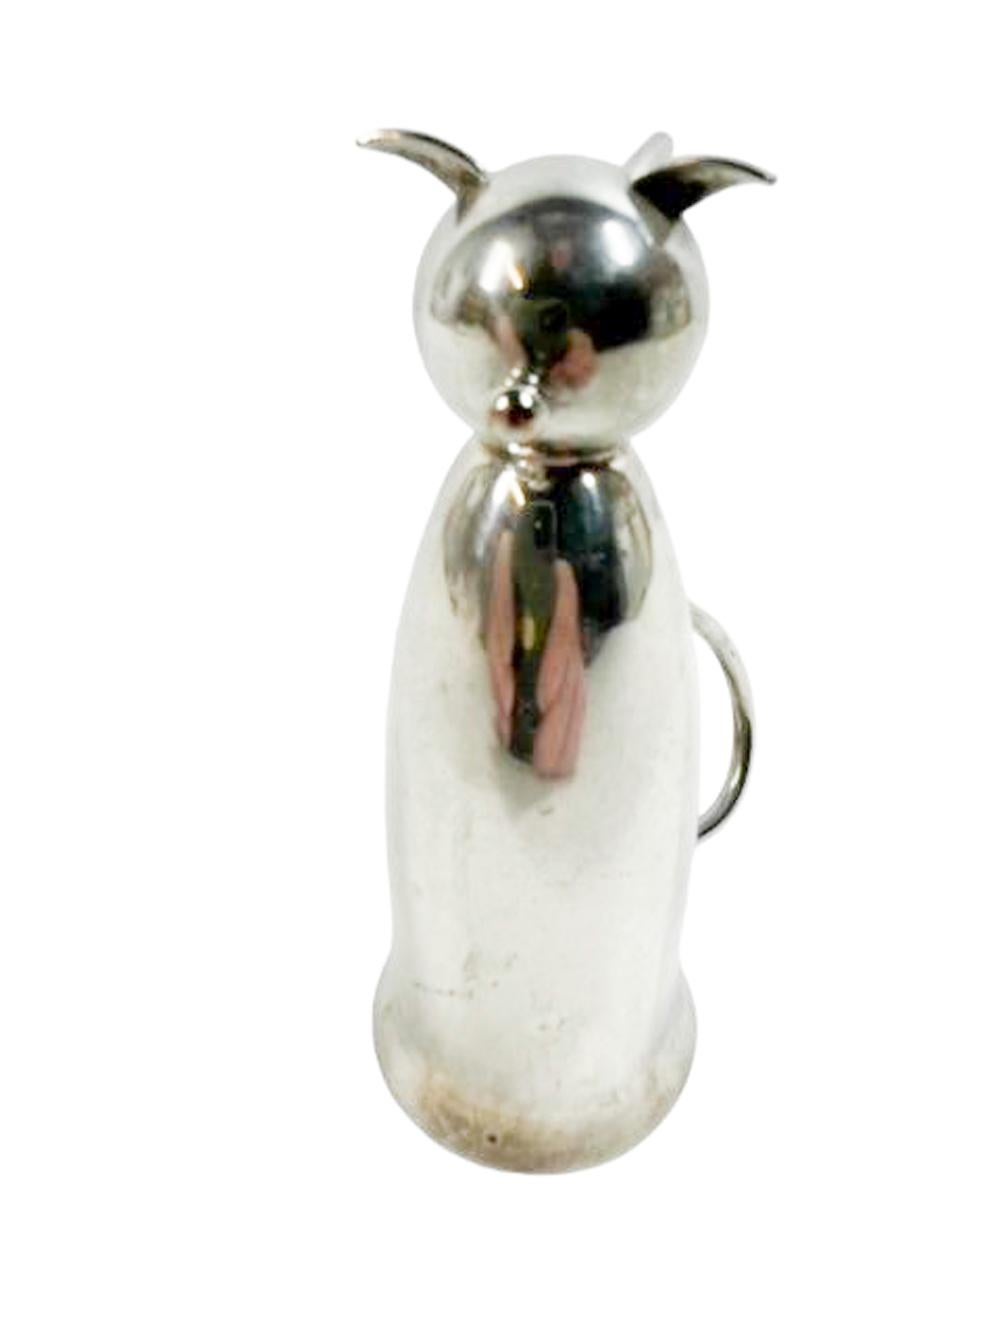 Art Deco Silberplatte Steigbügelbecher Typ 1oz Spirituosenmaß oder Jigger in der Form einer sitzenden Katze mit ihren Ohren und Schwanz, die eine Füße, wenn sie für den Einsatz umgedreht.